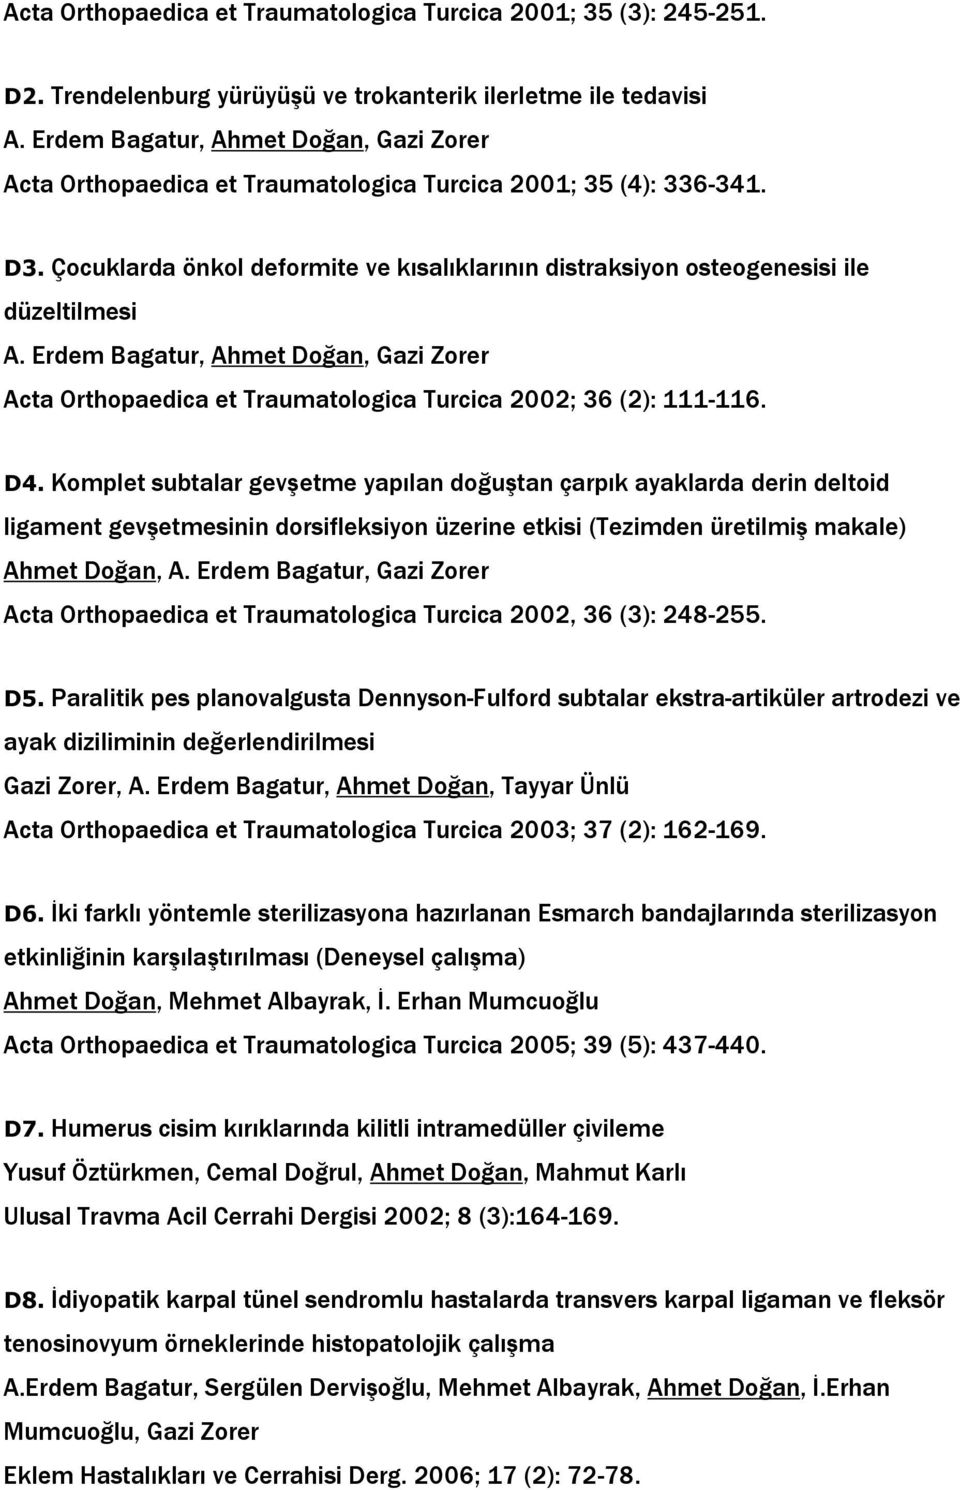 Çocuklarda önkol deformite ve kısalıklarının distraksiyon osteogenesisi ile düzeltilmesi A. Erdem Bagatur, Ahmet Doğan, Gazi Zorer Acta Orthopaedica et Traumatologica Turcica 2002; 36 (2): 111-116.